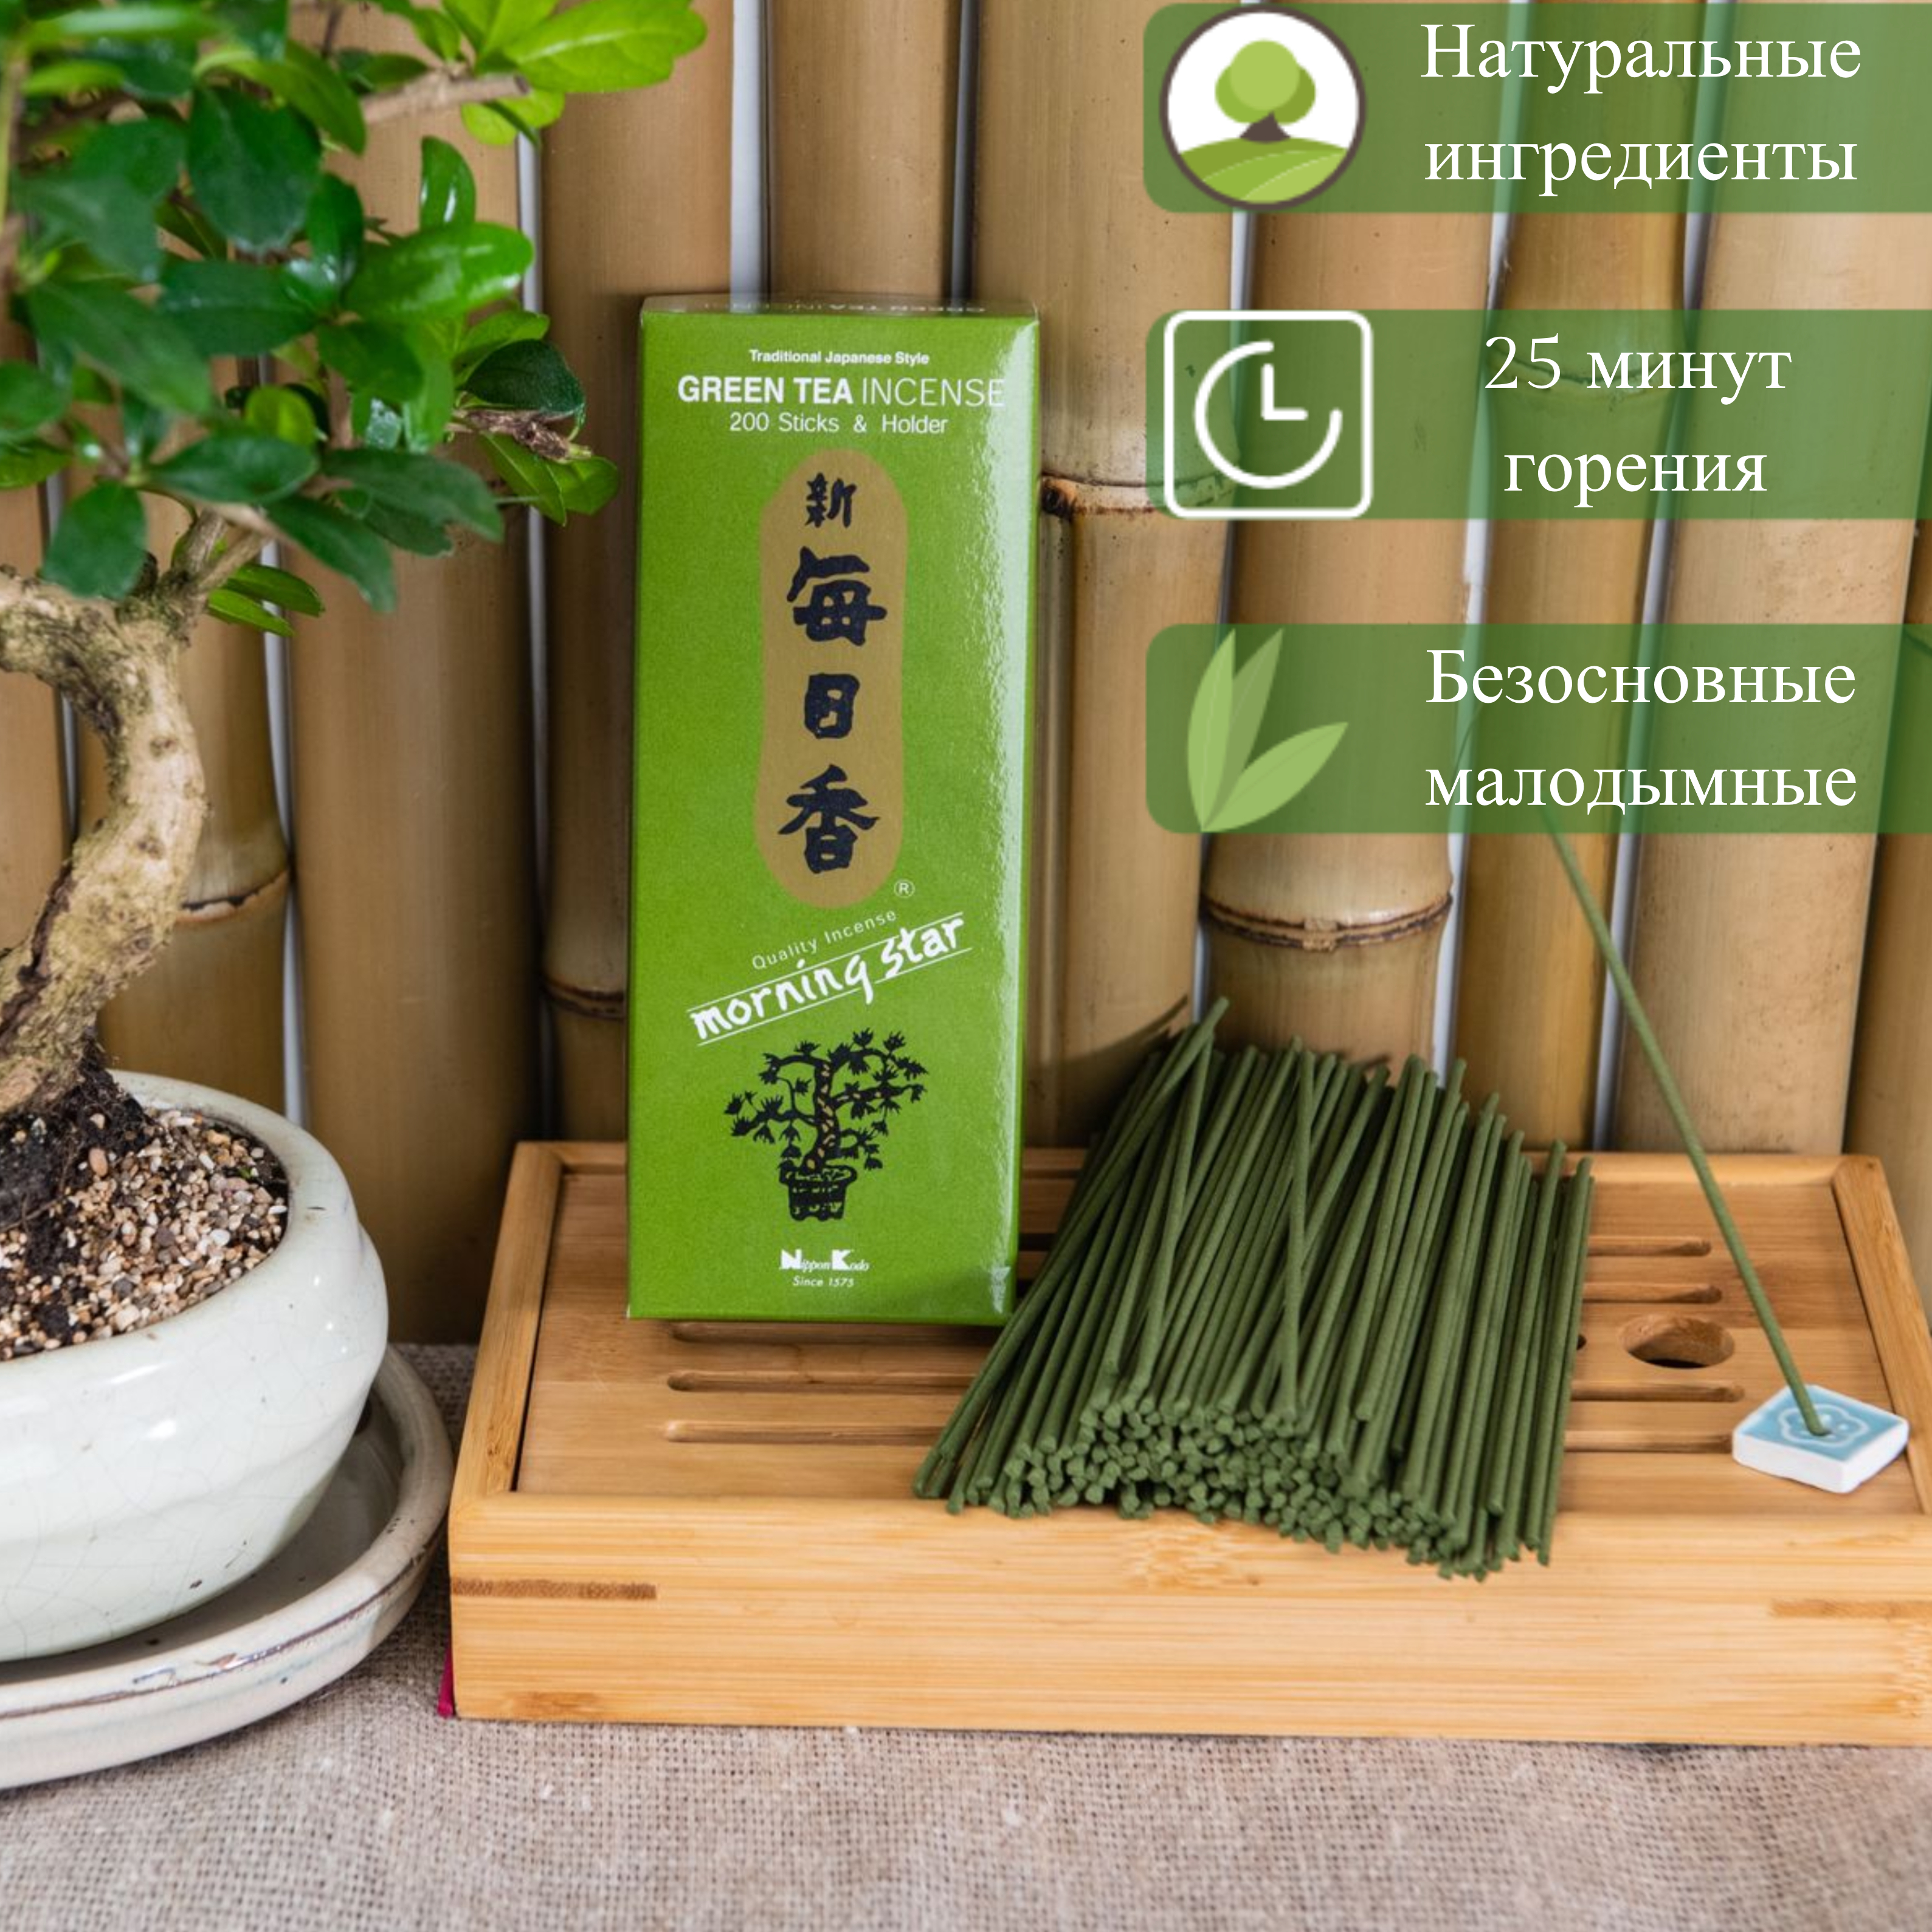 Благовоние Green Tea (Зеленый чай), 200 палочек по 12 см, 200, Green Tea